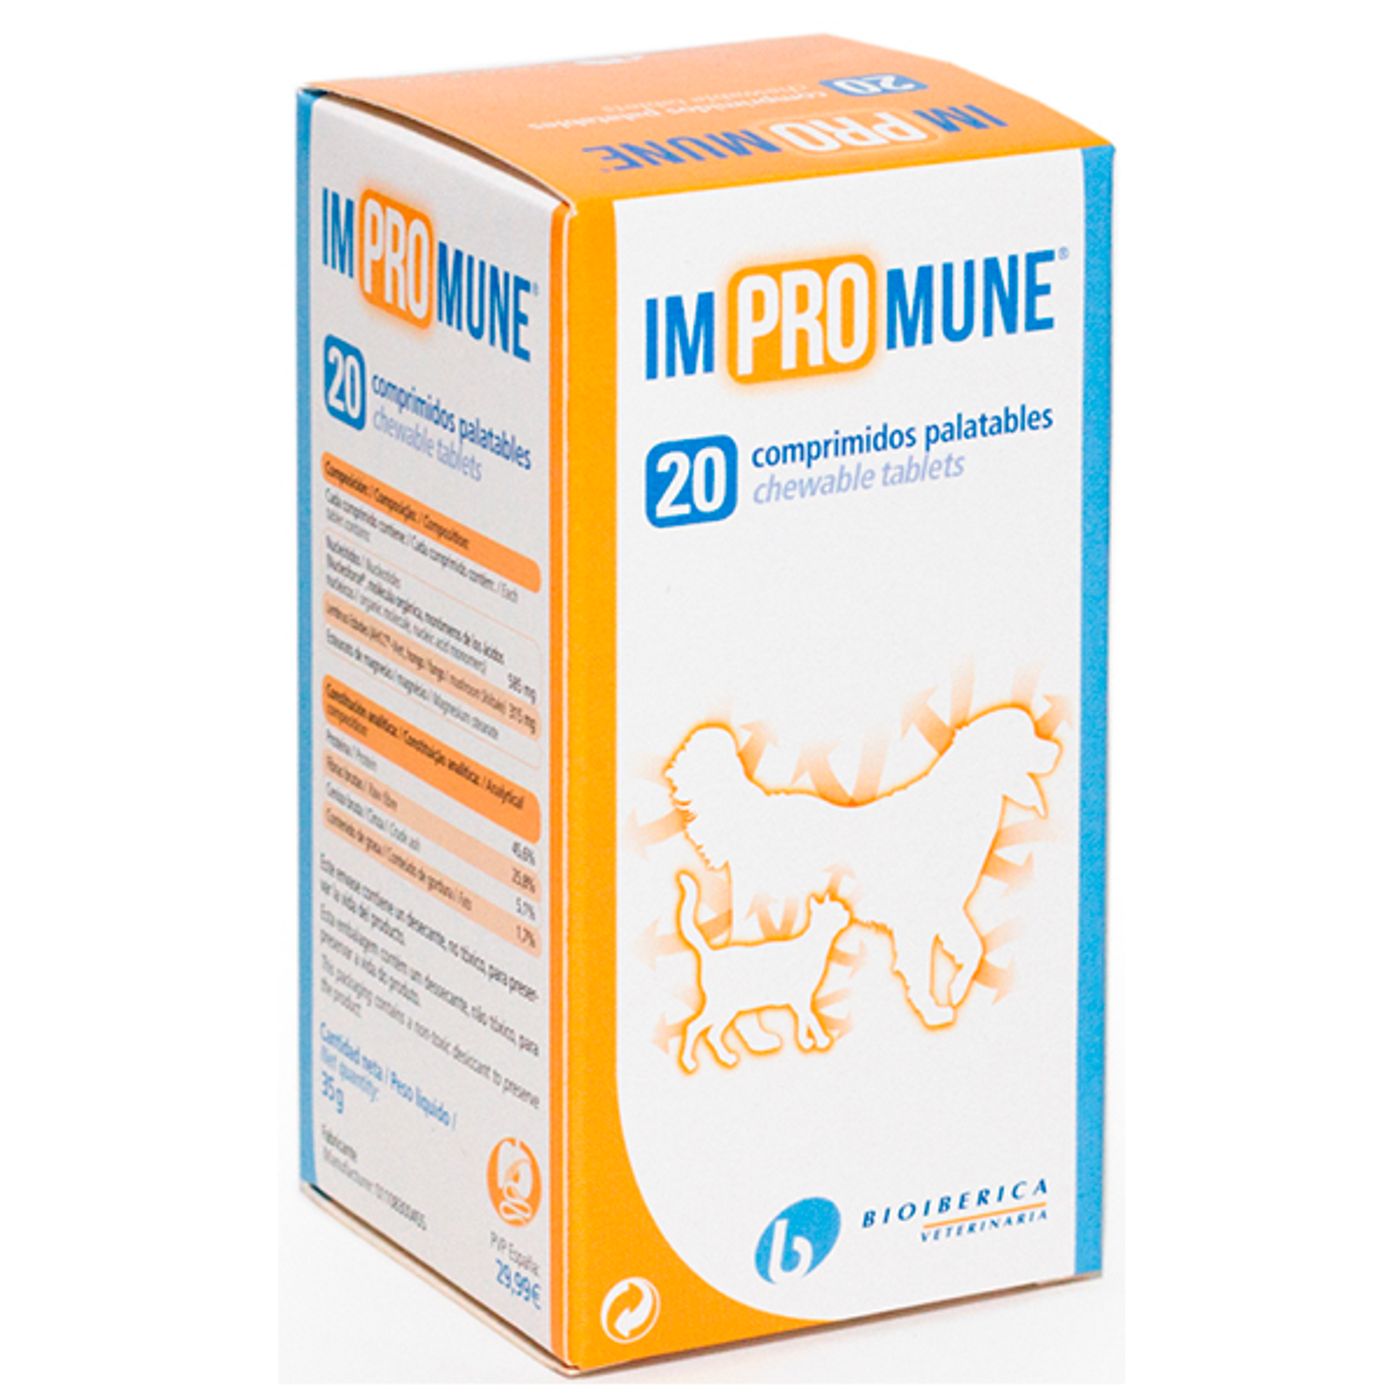 Bioiberica-Impromune-20-Comprimidos